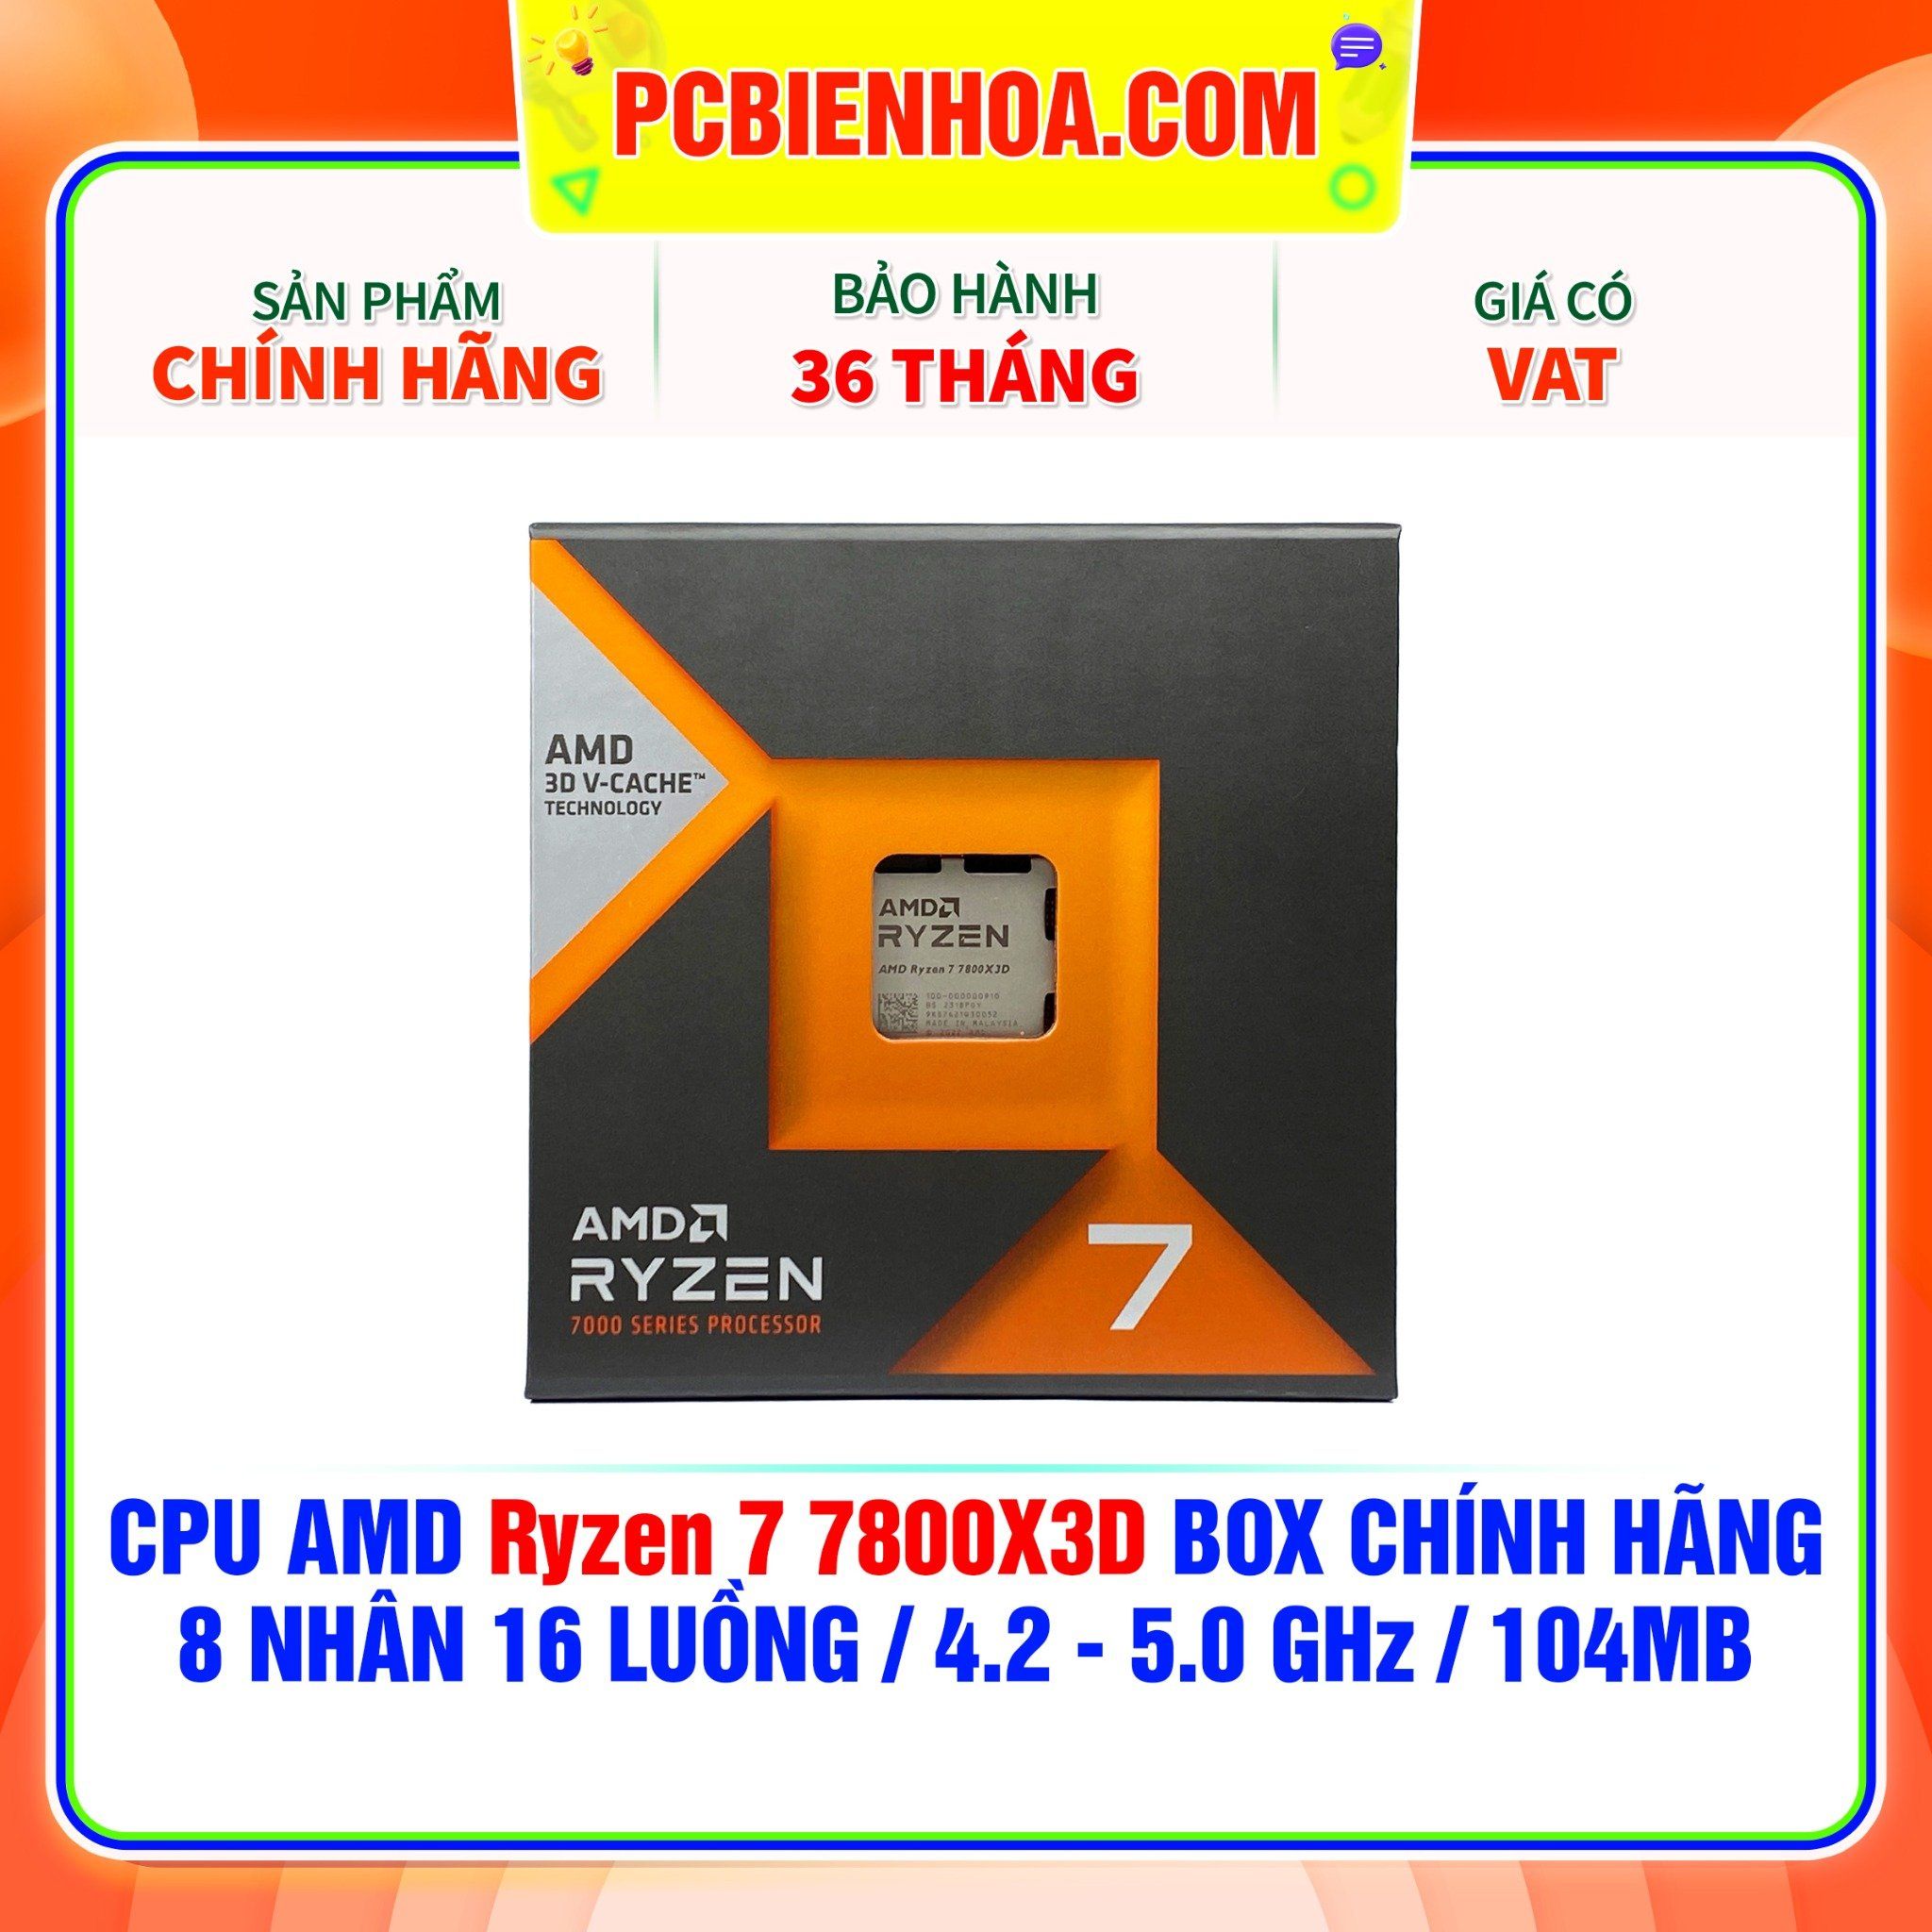  CPU AMD Ryzen 7 7800X3D BOX CHÍNH HÃNG ( 8 NHÂN 16 LUỒNG / 4.2 - 5.0 GHz / 104MB ) 